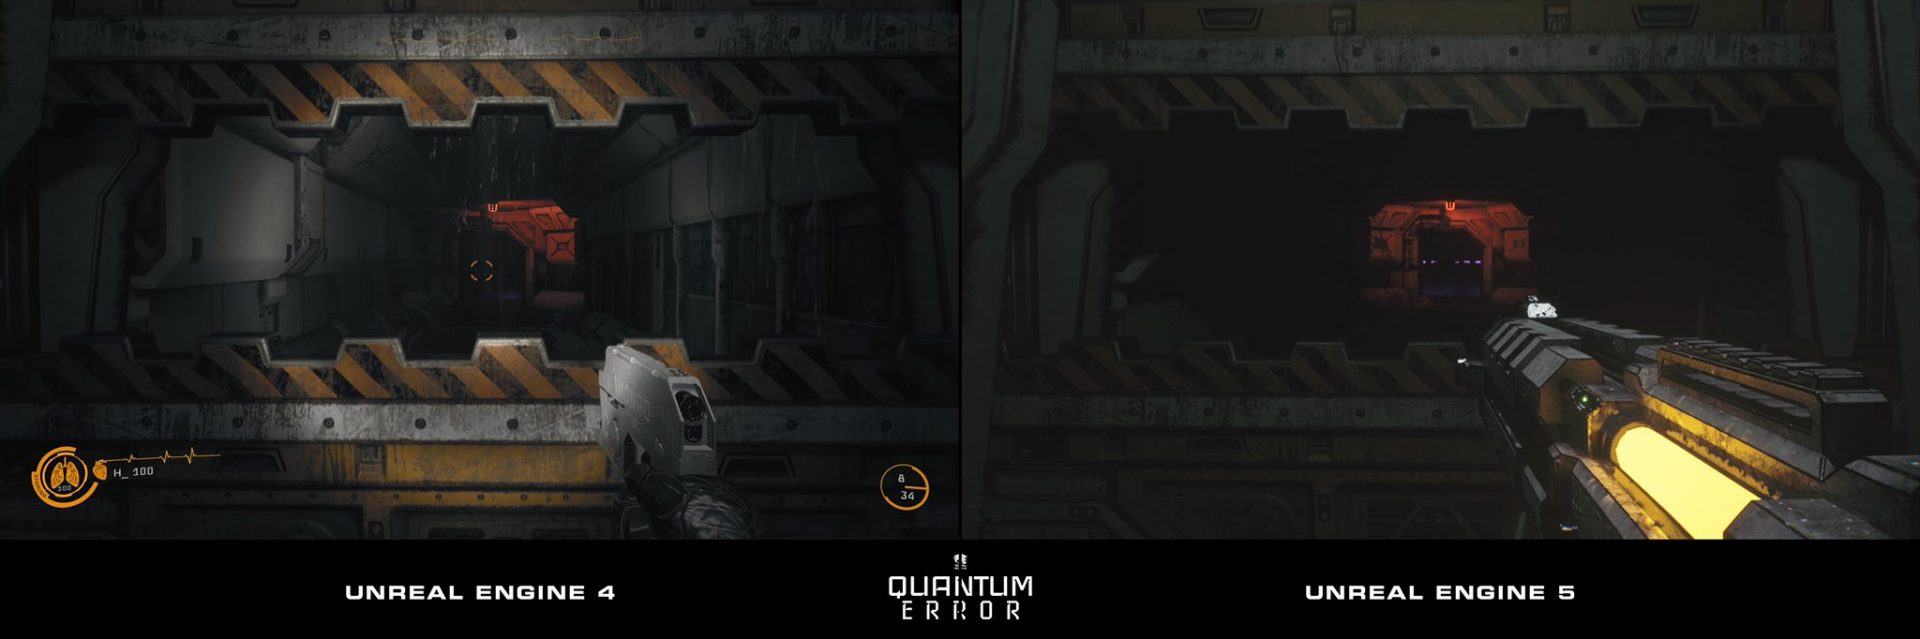 Хоррор Quantum Error переходит на Unreal Engine 5 - представлен обновленный геймплей